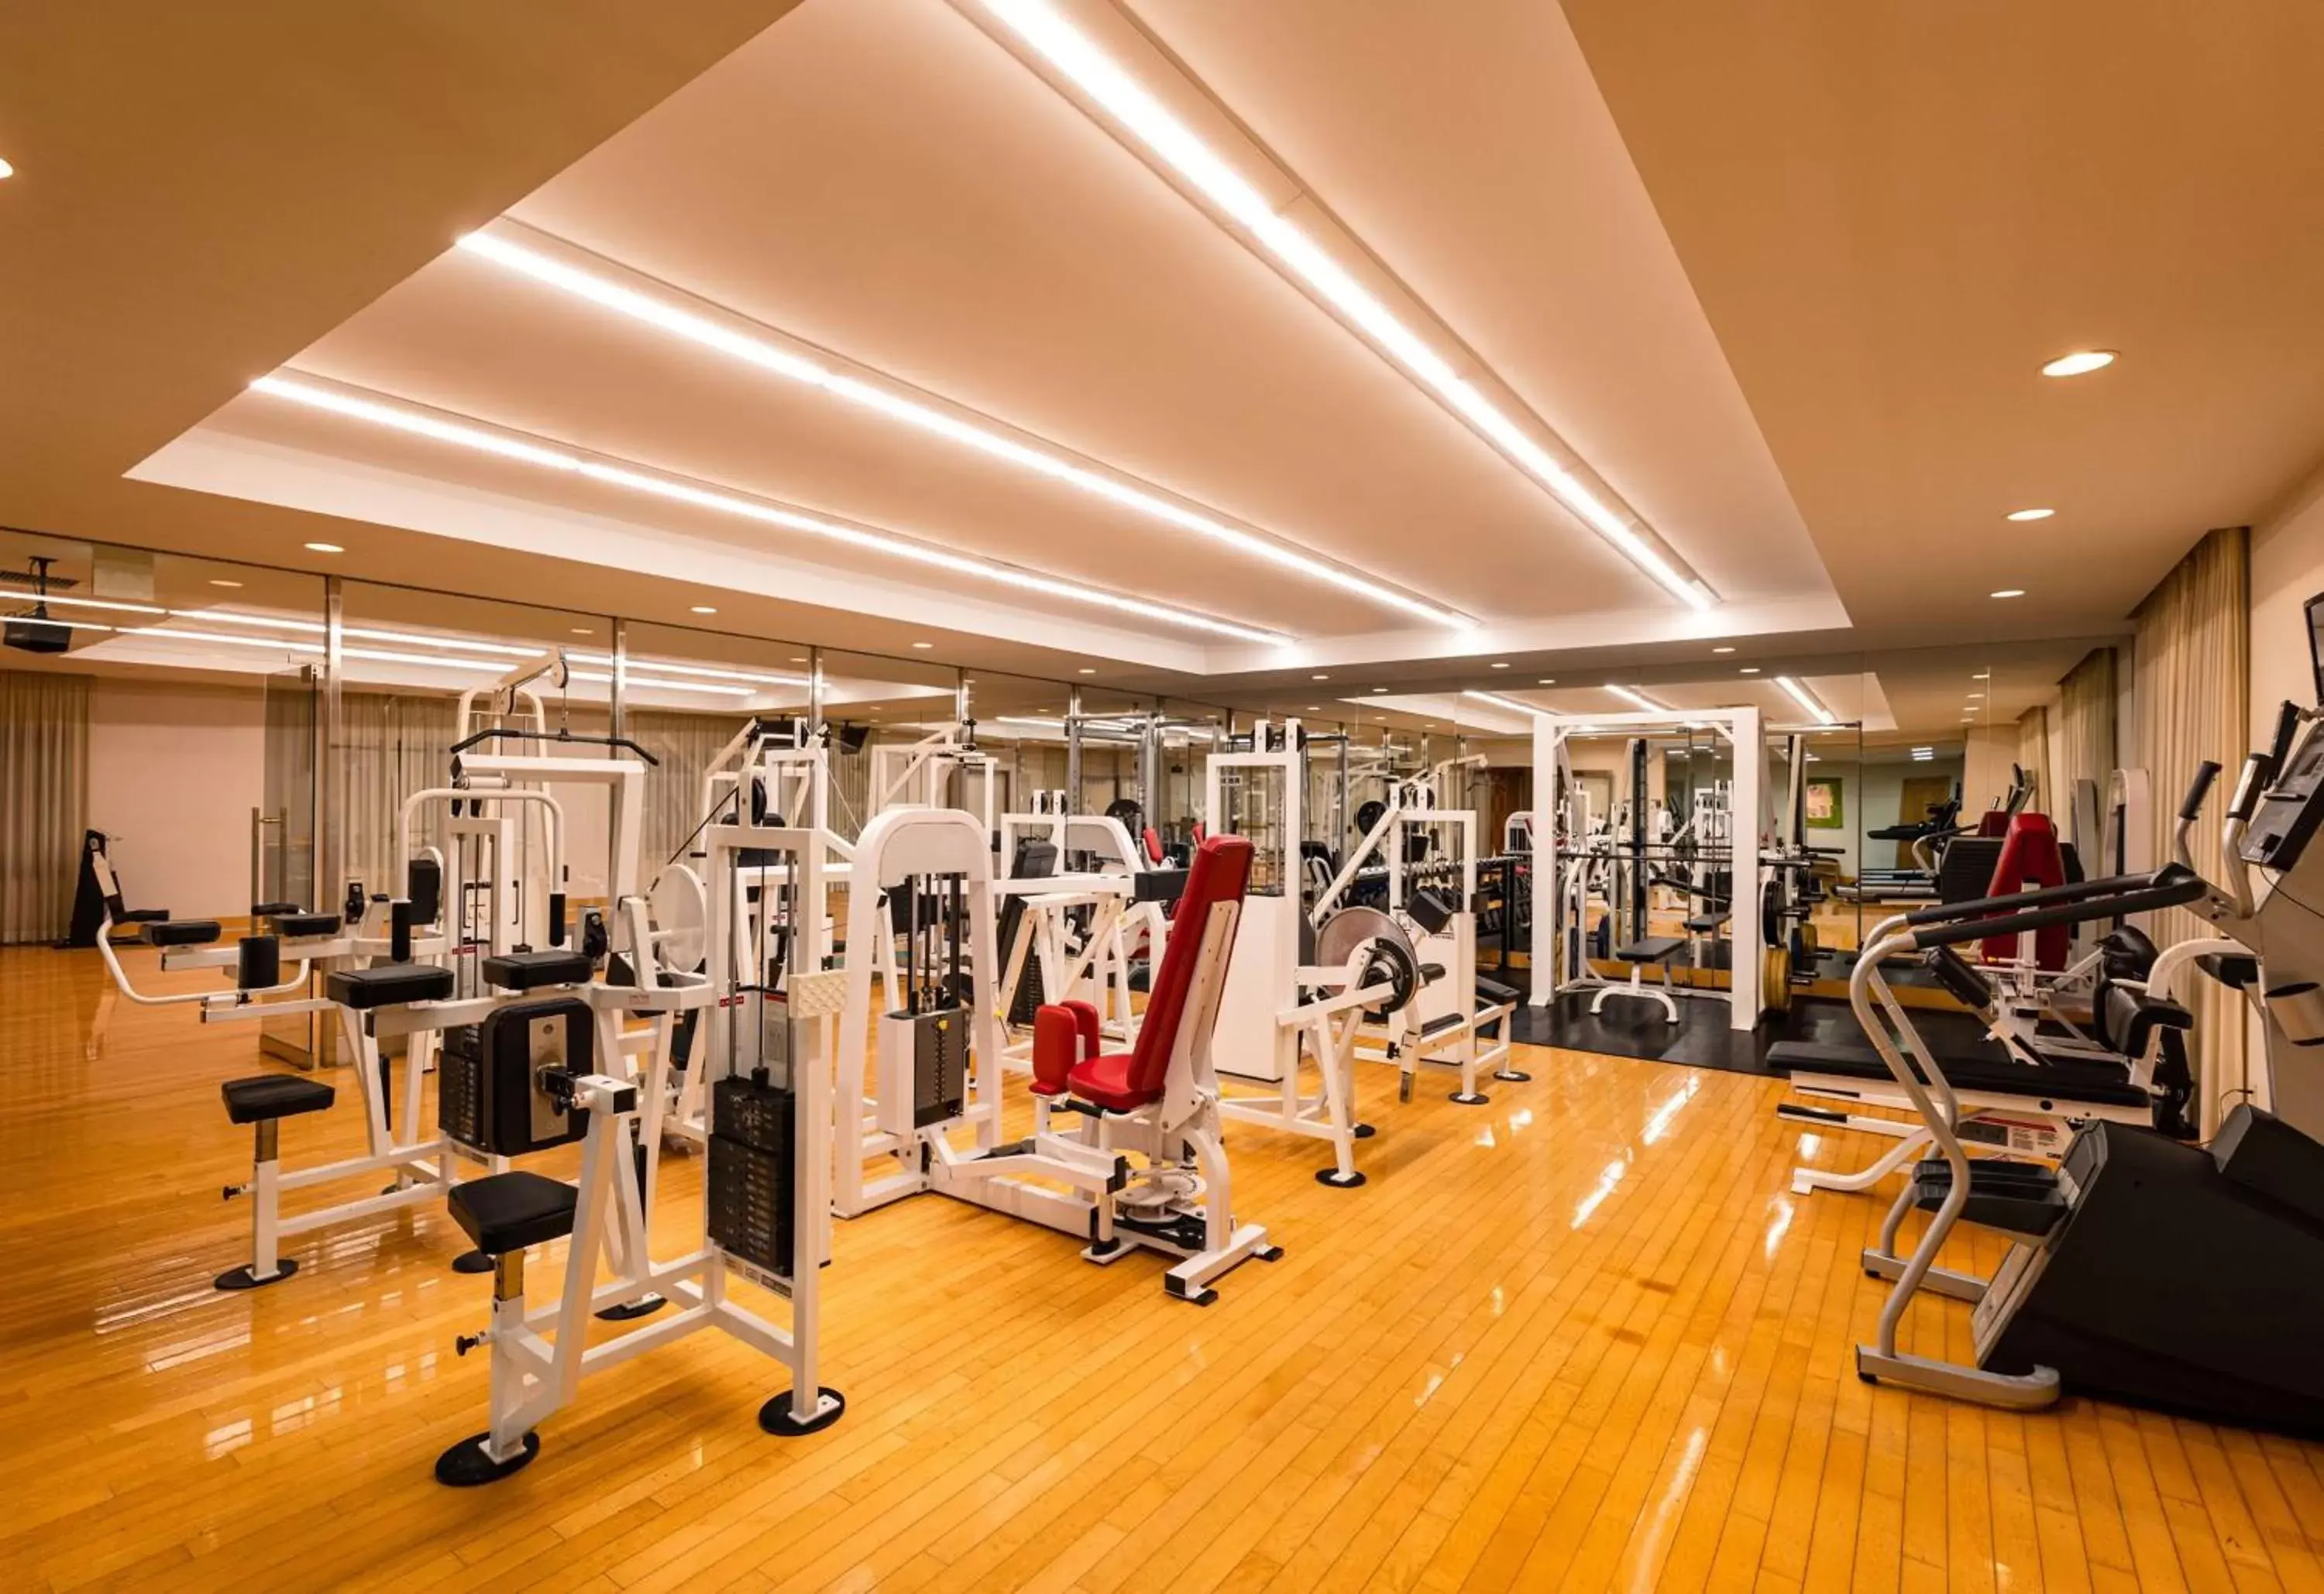 Fitness centre/facilities, Fitness Center/Facilities in Grand Hyatt Fukuoka